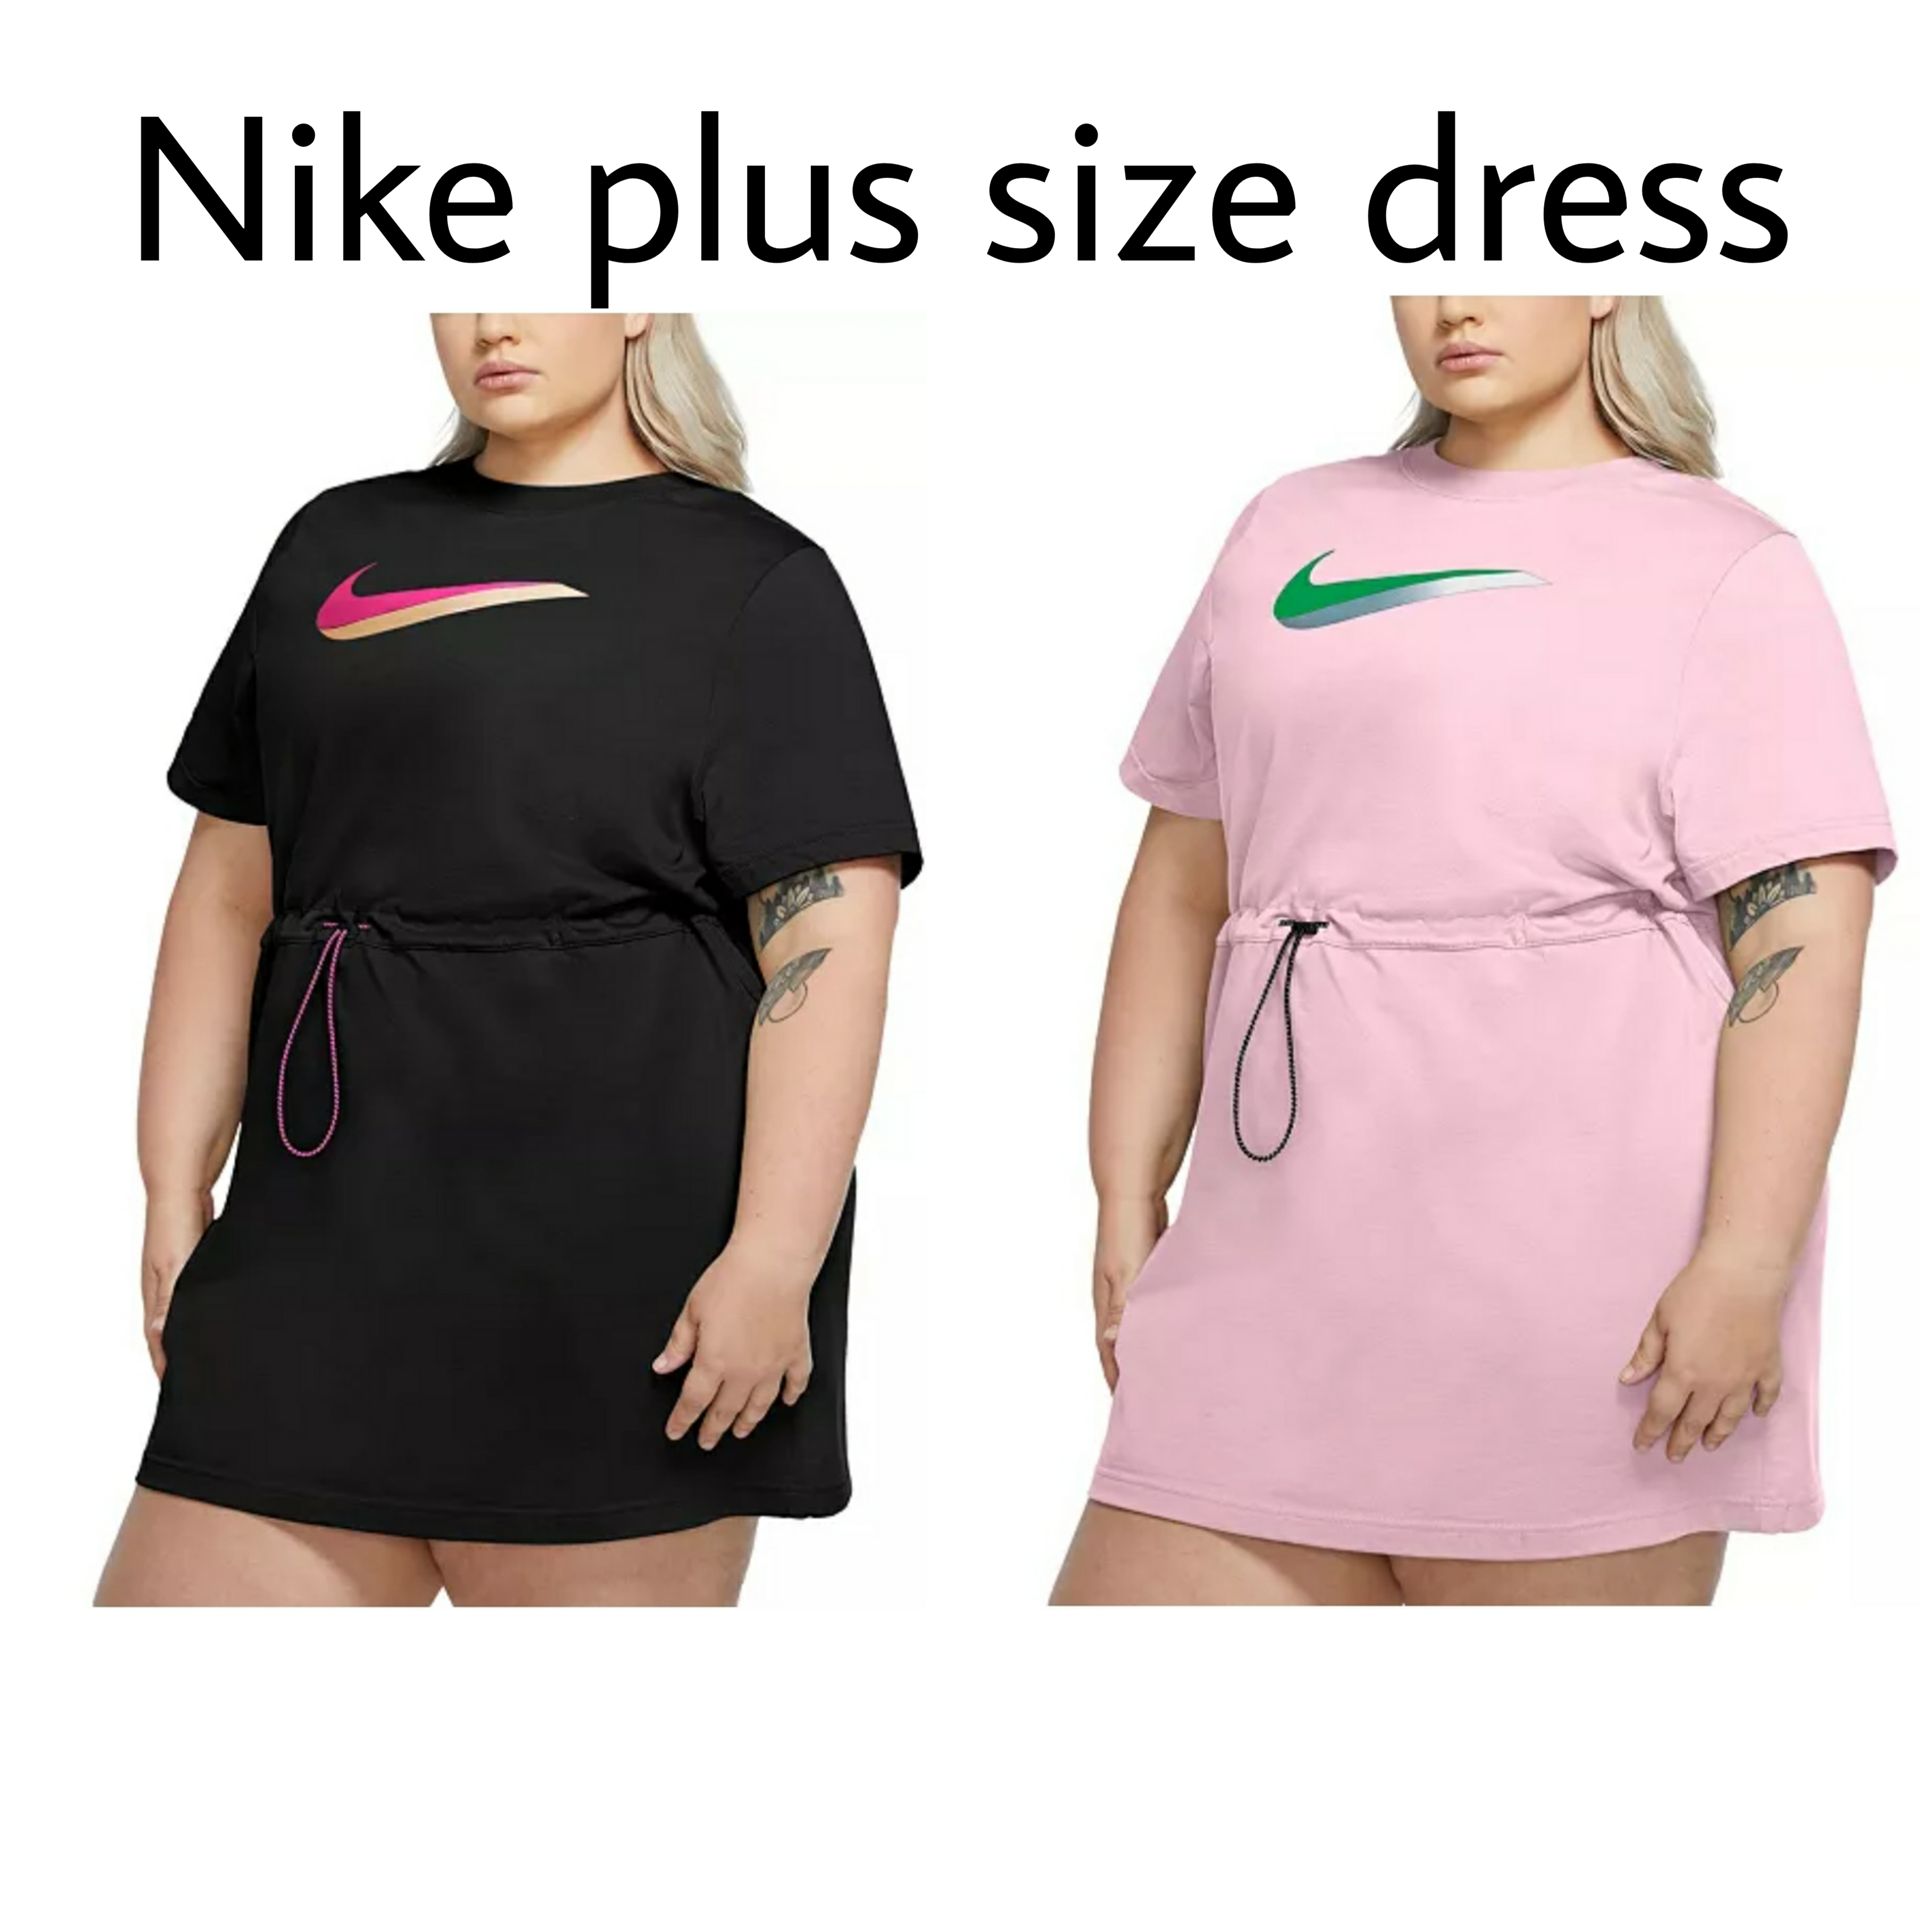 macys plus size nike dress